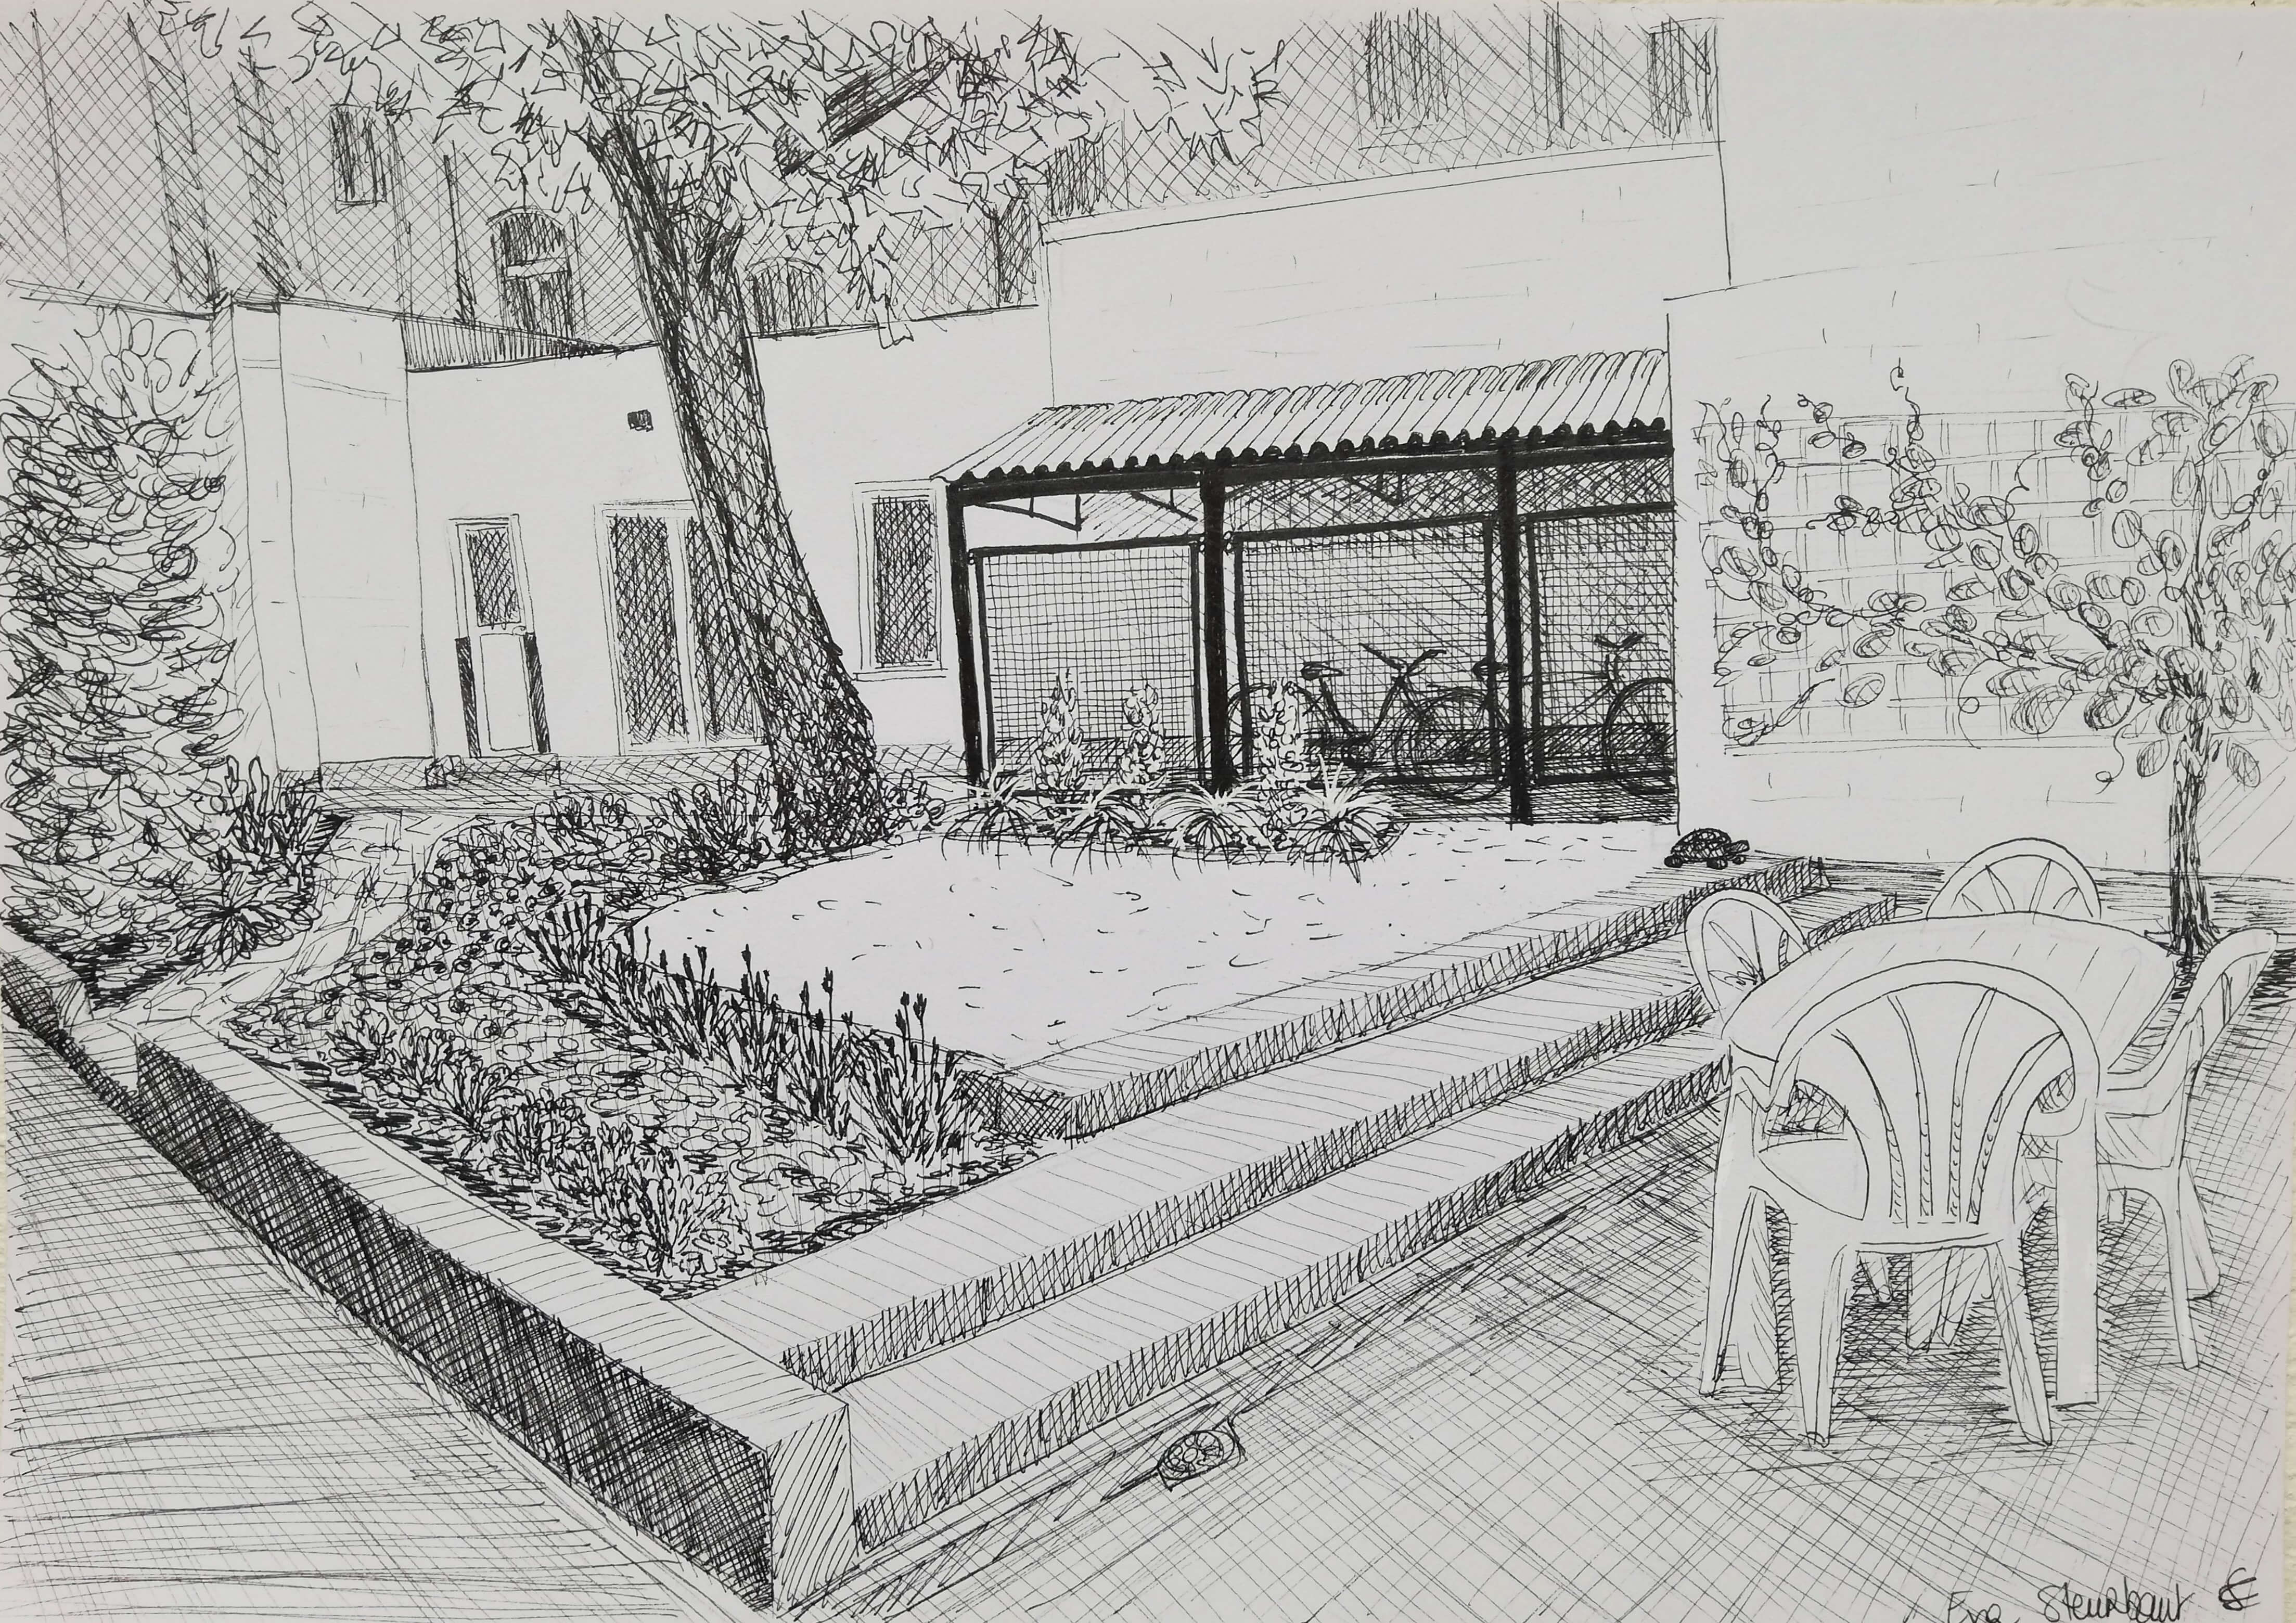 Impressie van de tuin, tekening in zwarte inkt door Eva Steurbaut